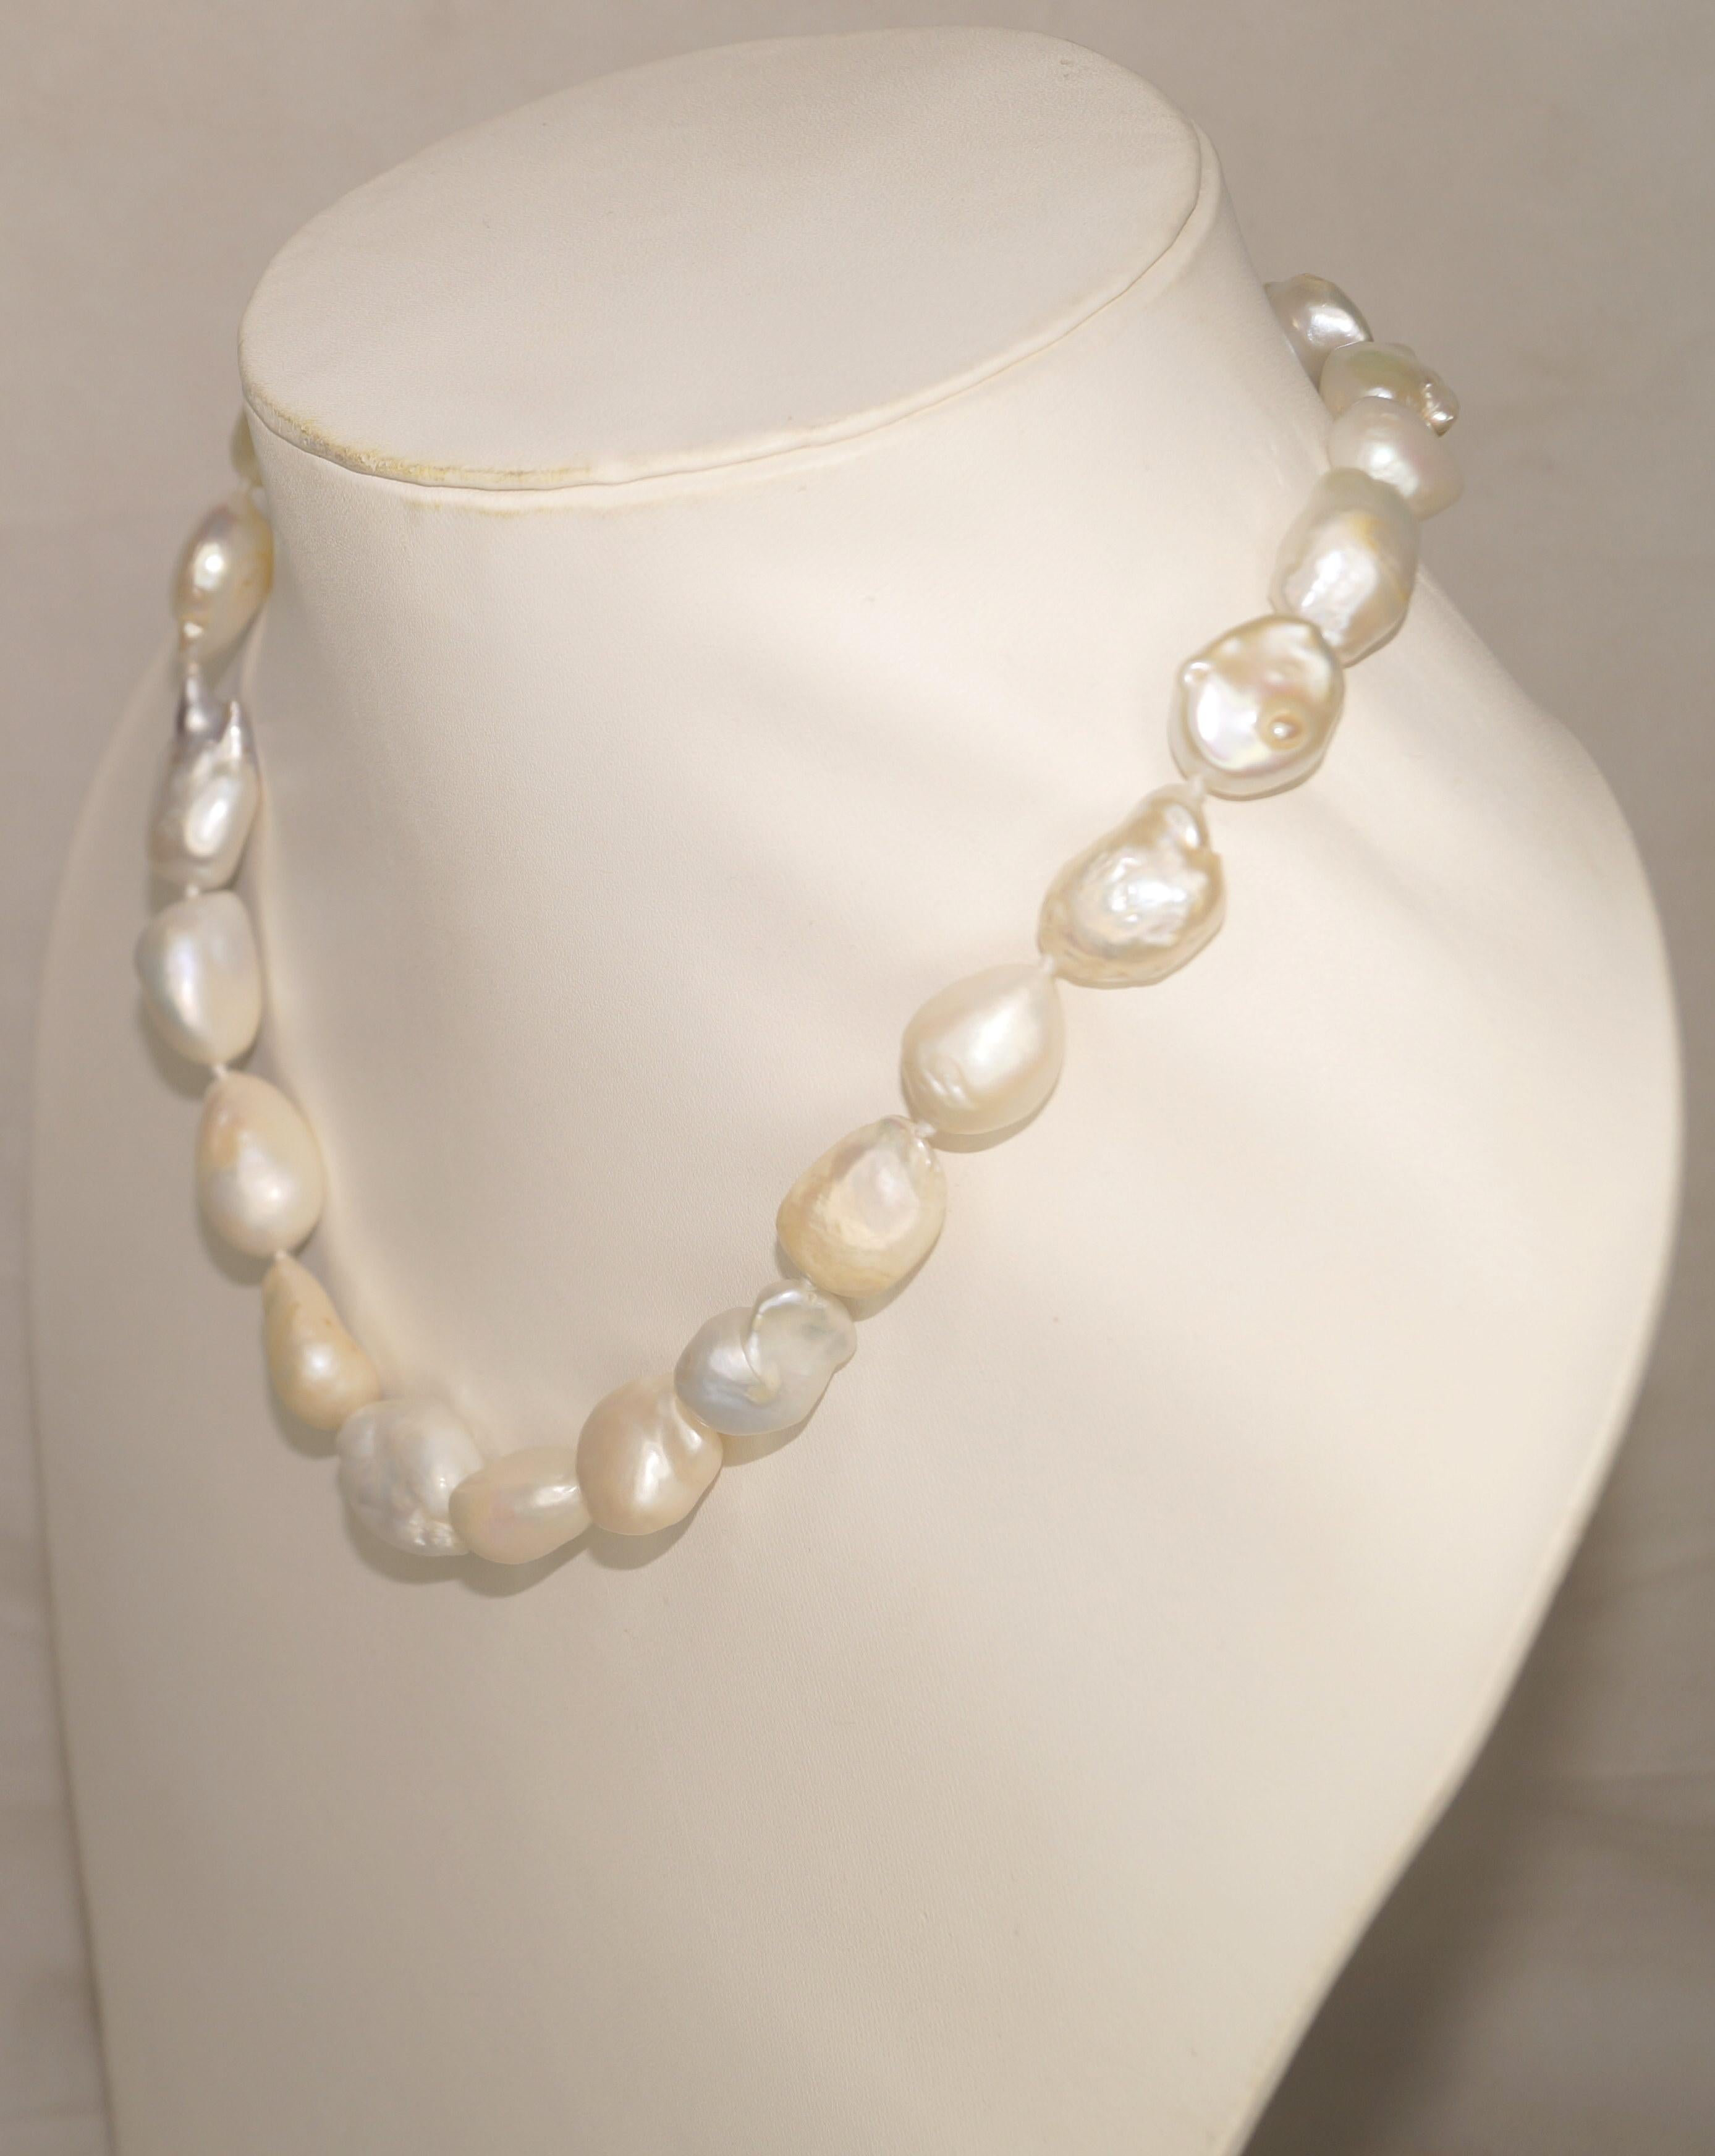 Einzelheiten:
: 14k Gelbgold Schloss Süßwasser Barockperlen Perlen

: Artikel Nr. KM82/300

Perlengröße: 16mmx23mm (ca.)

Länge der Halskette: 20